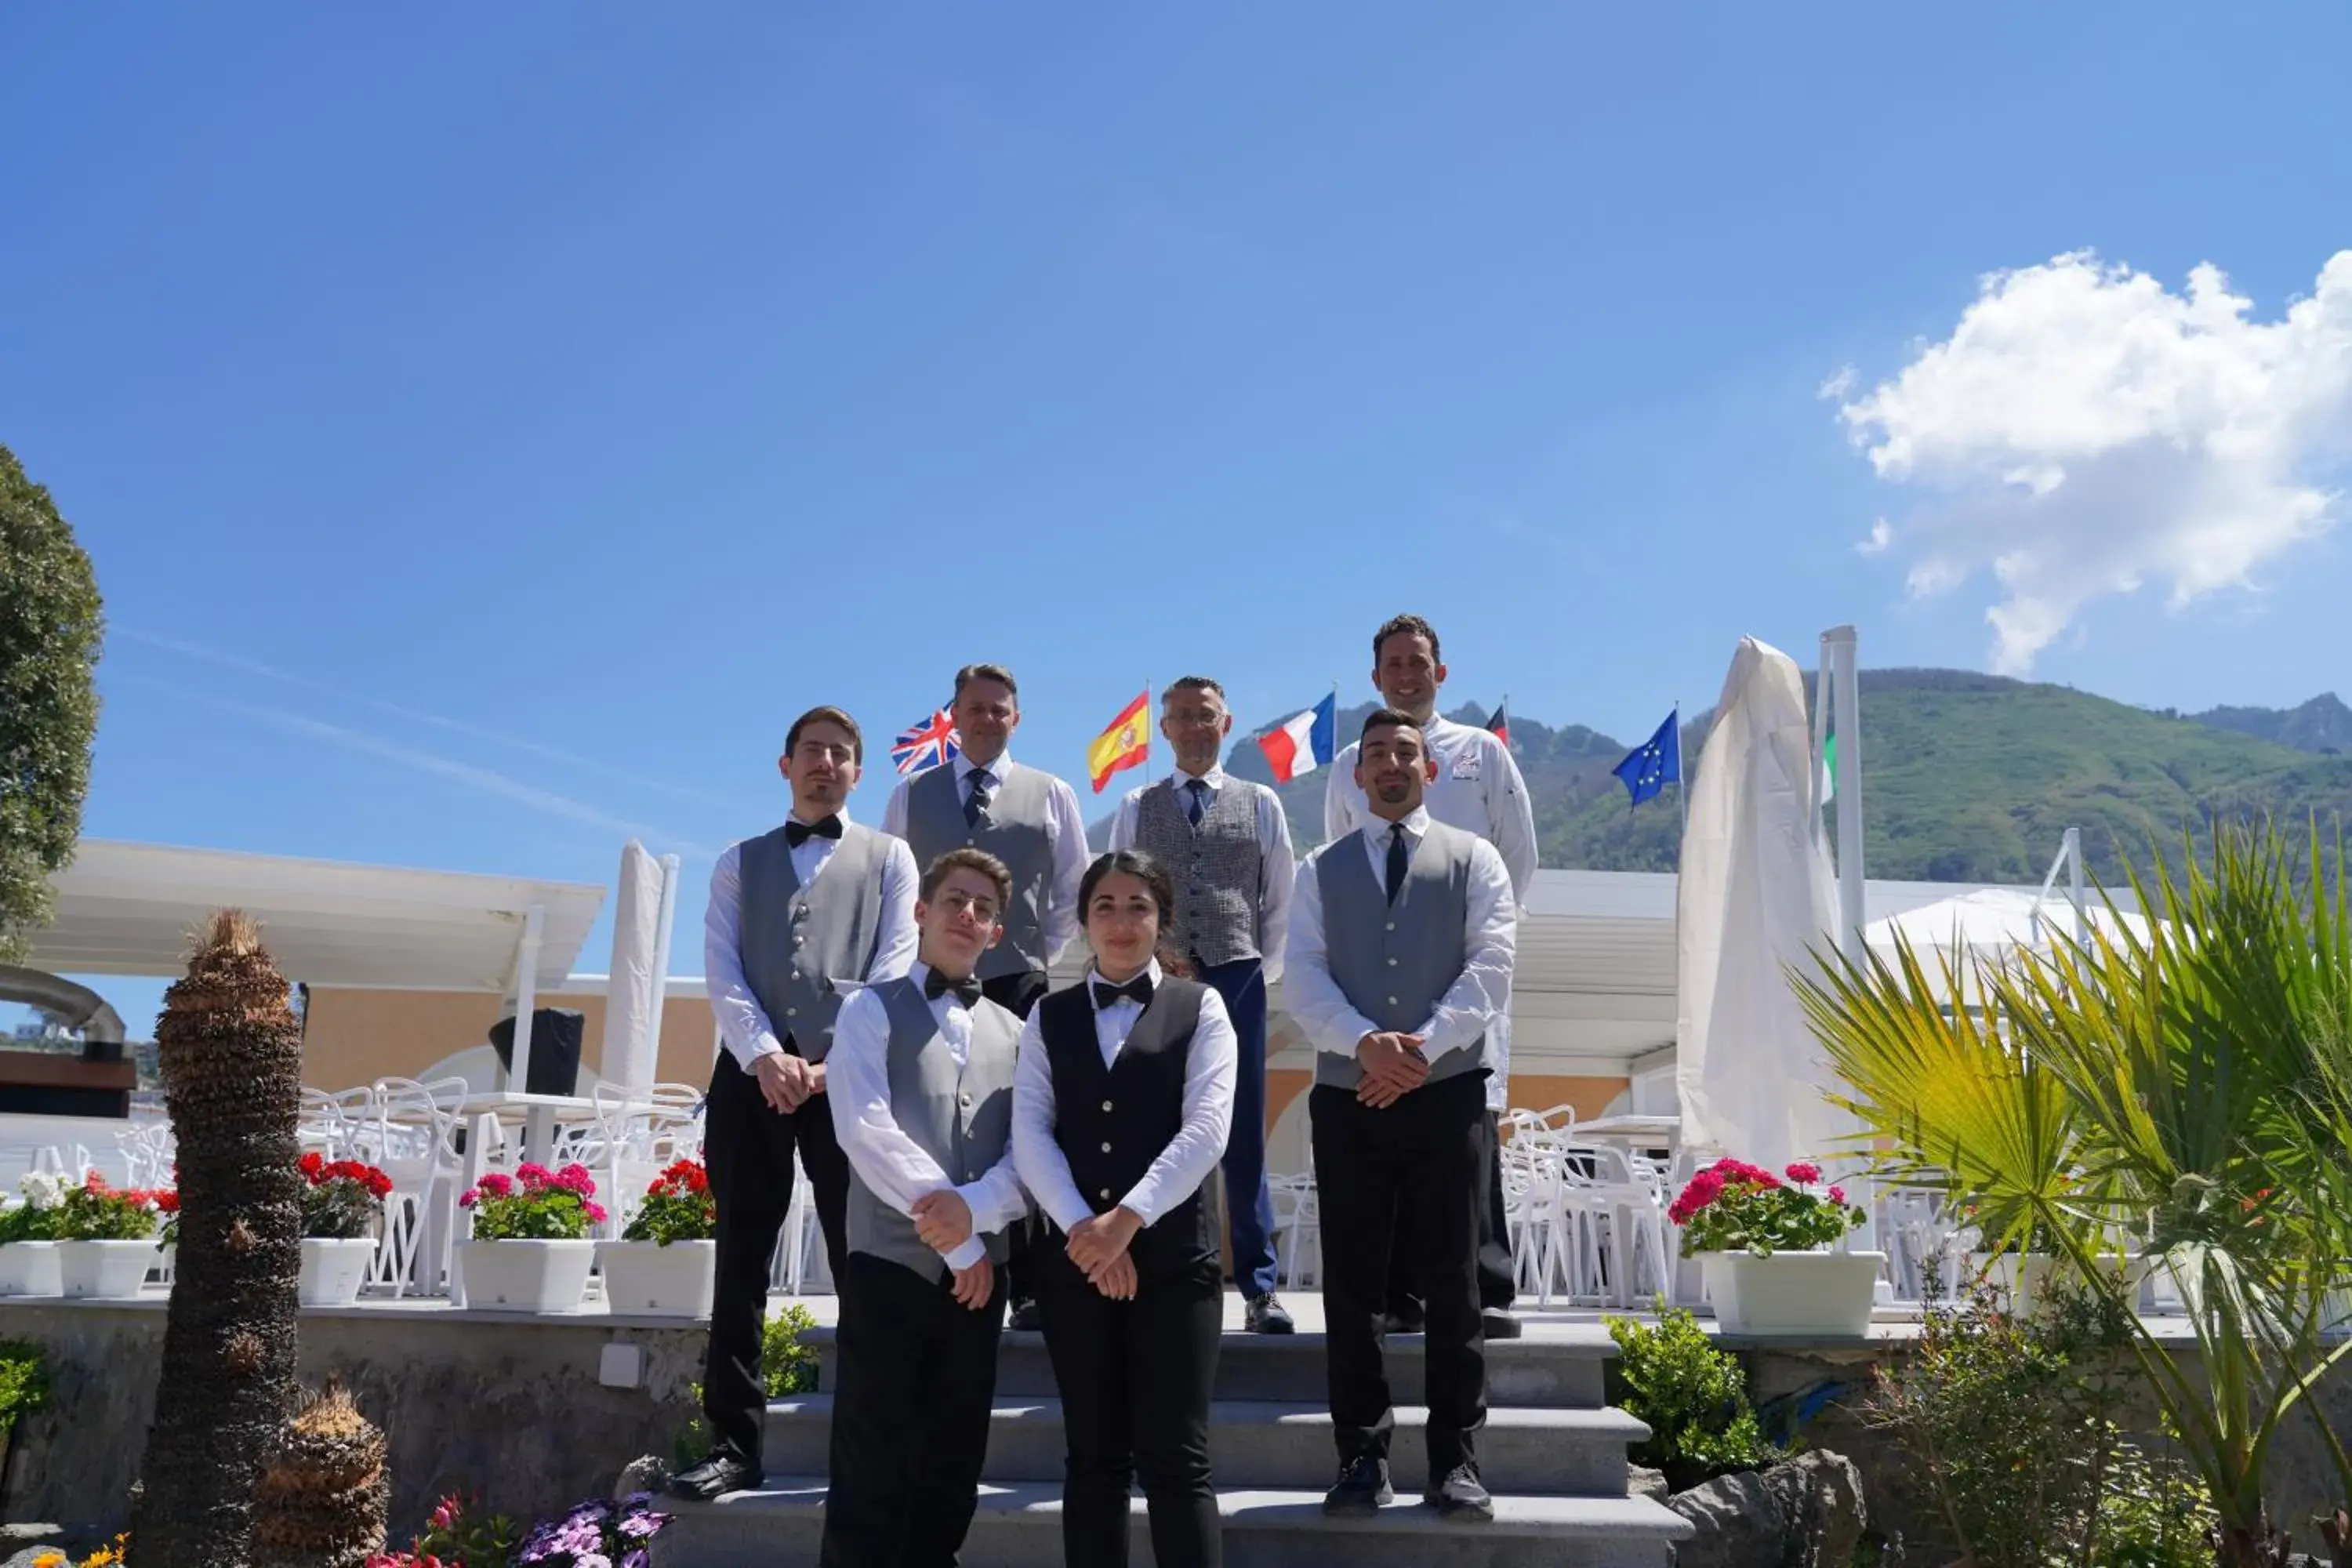 Staff in Hotel Parco Delle Agavi